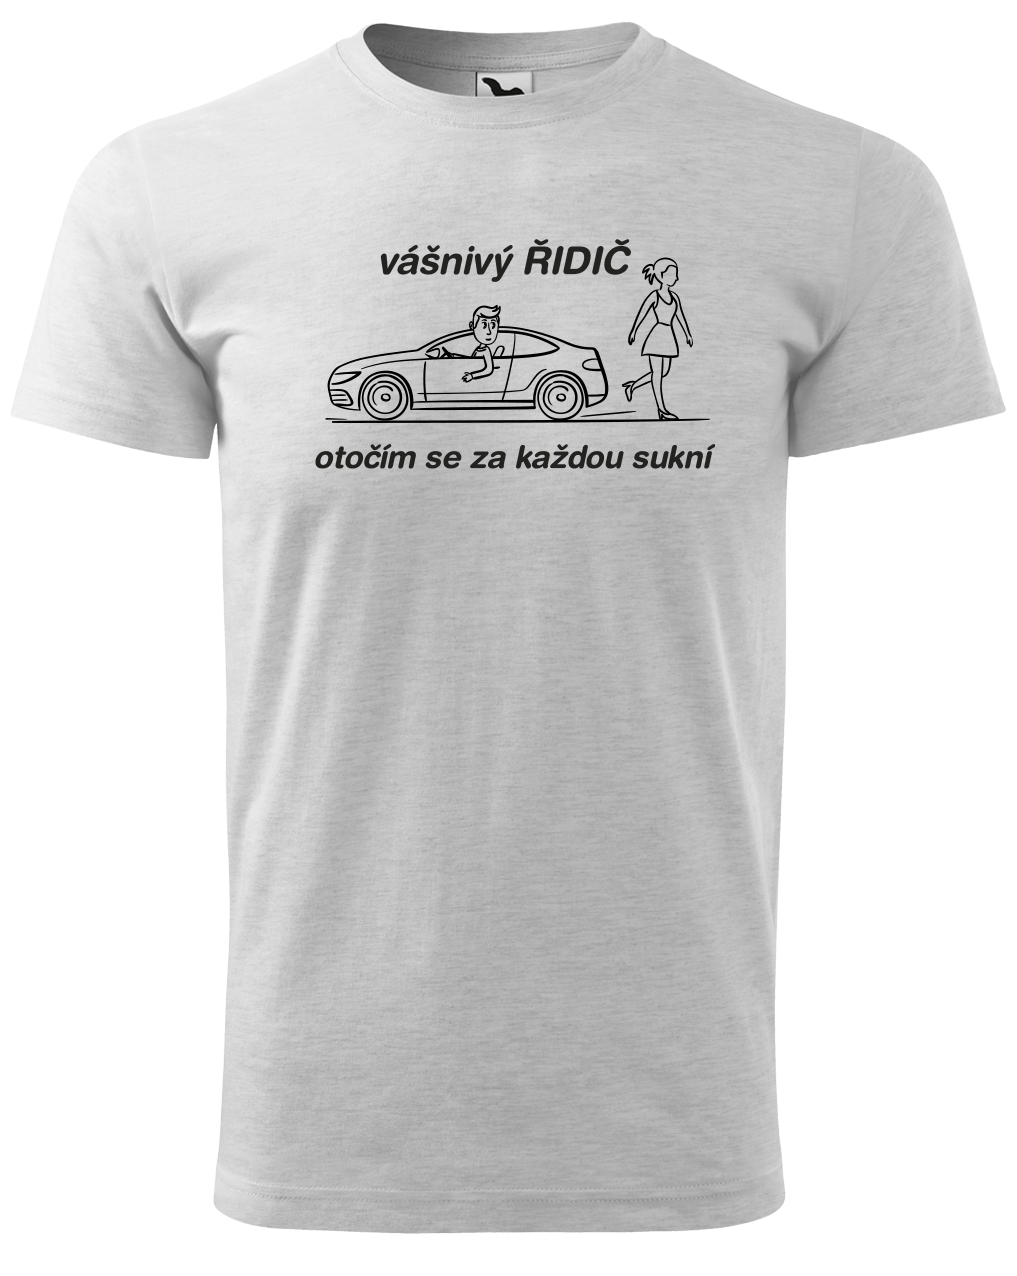 Vtipné tričko pro řidiče - Vášnivý řidič Velikost: S, Barva: Světle šedý melír (03)